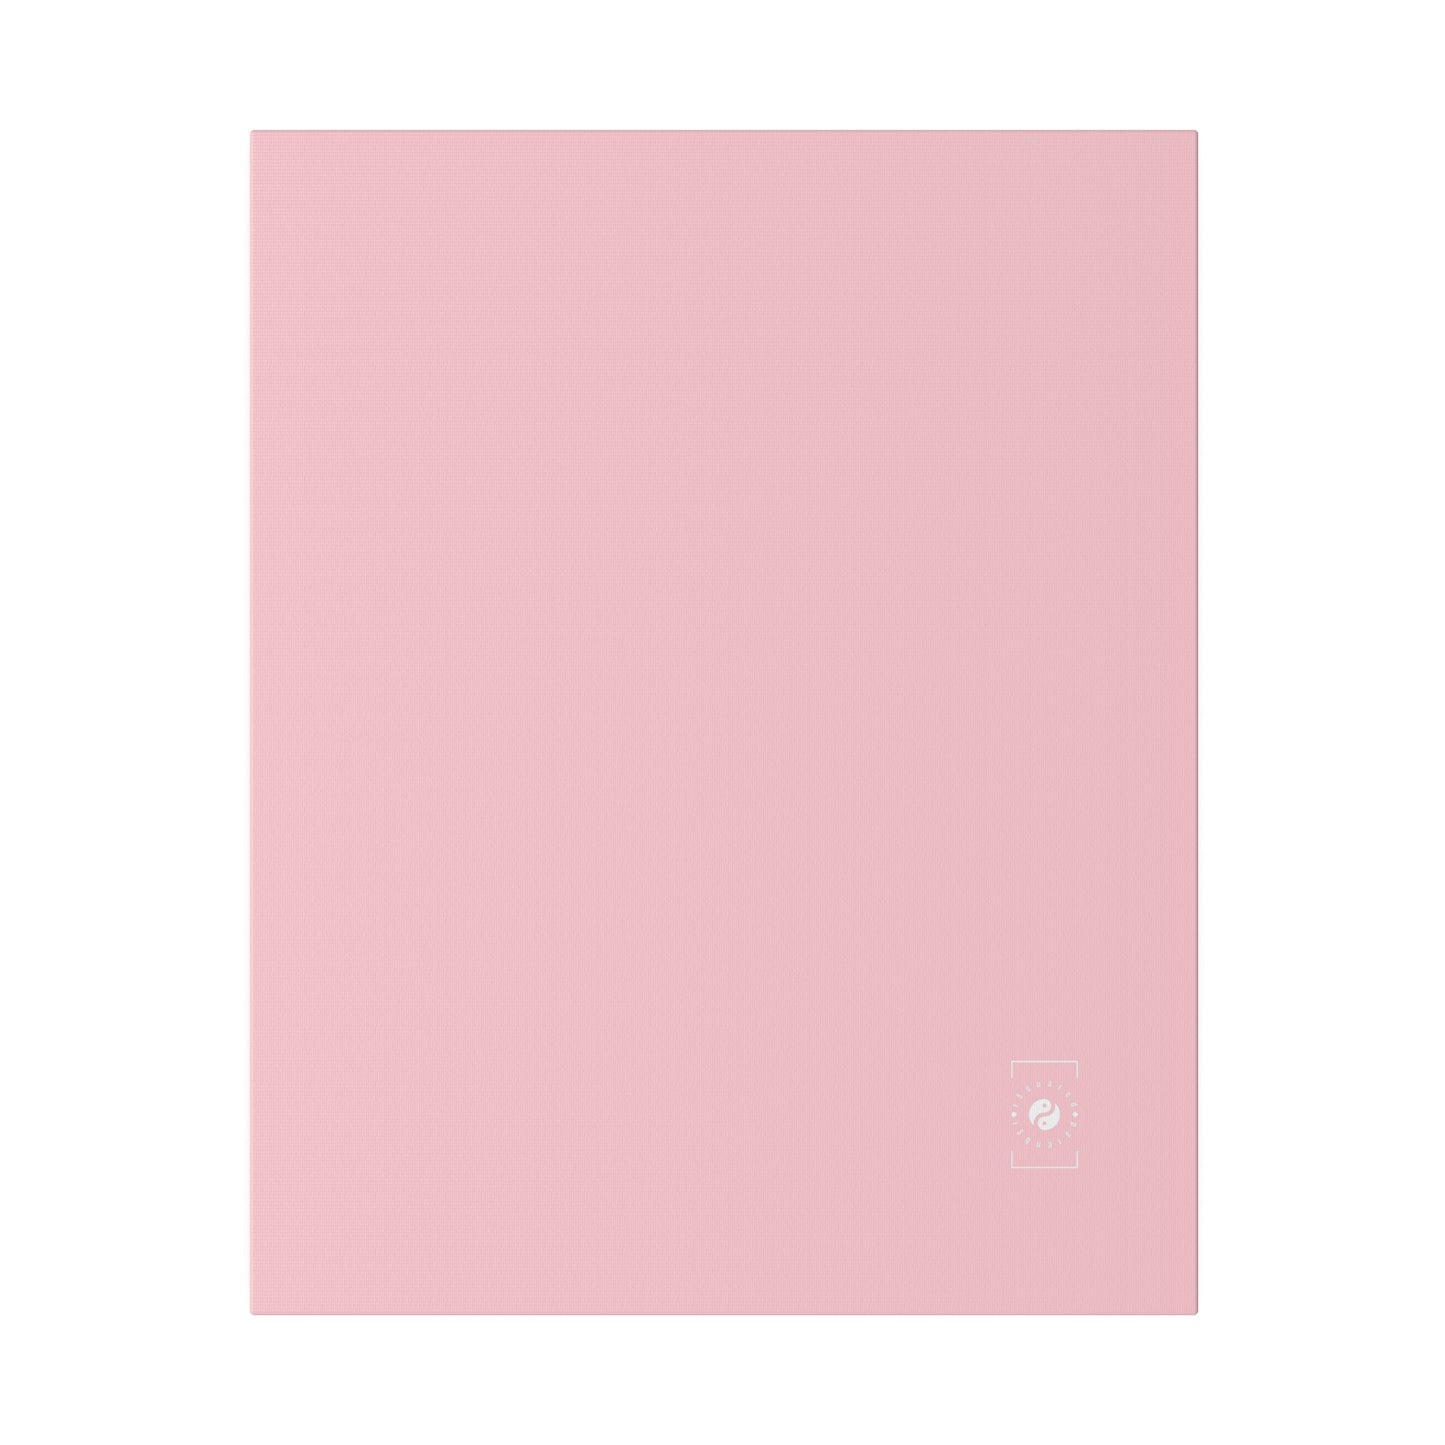 FFCCD4 Light Pink - Art Print Canvas